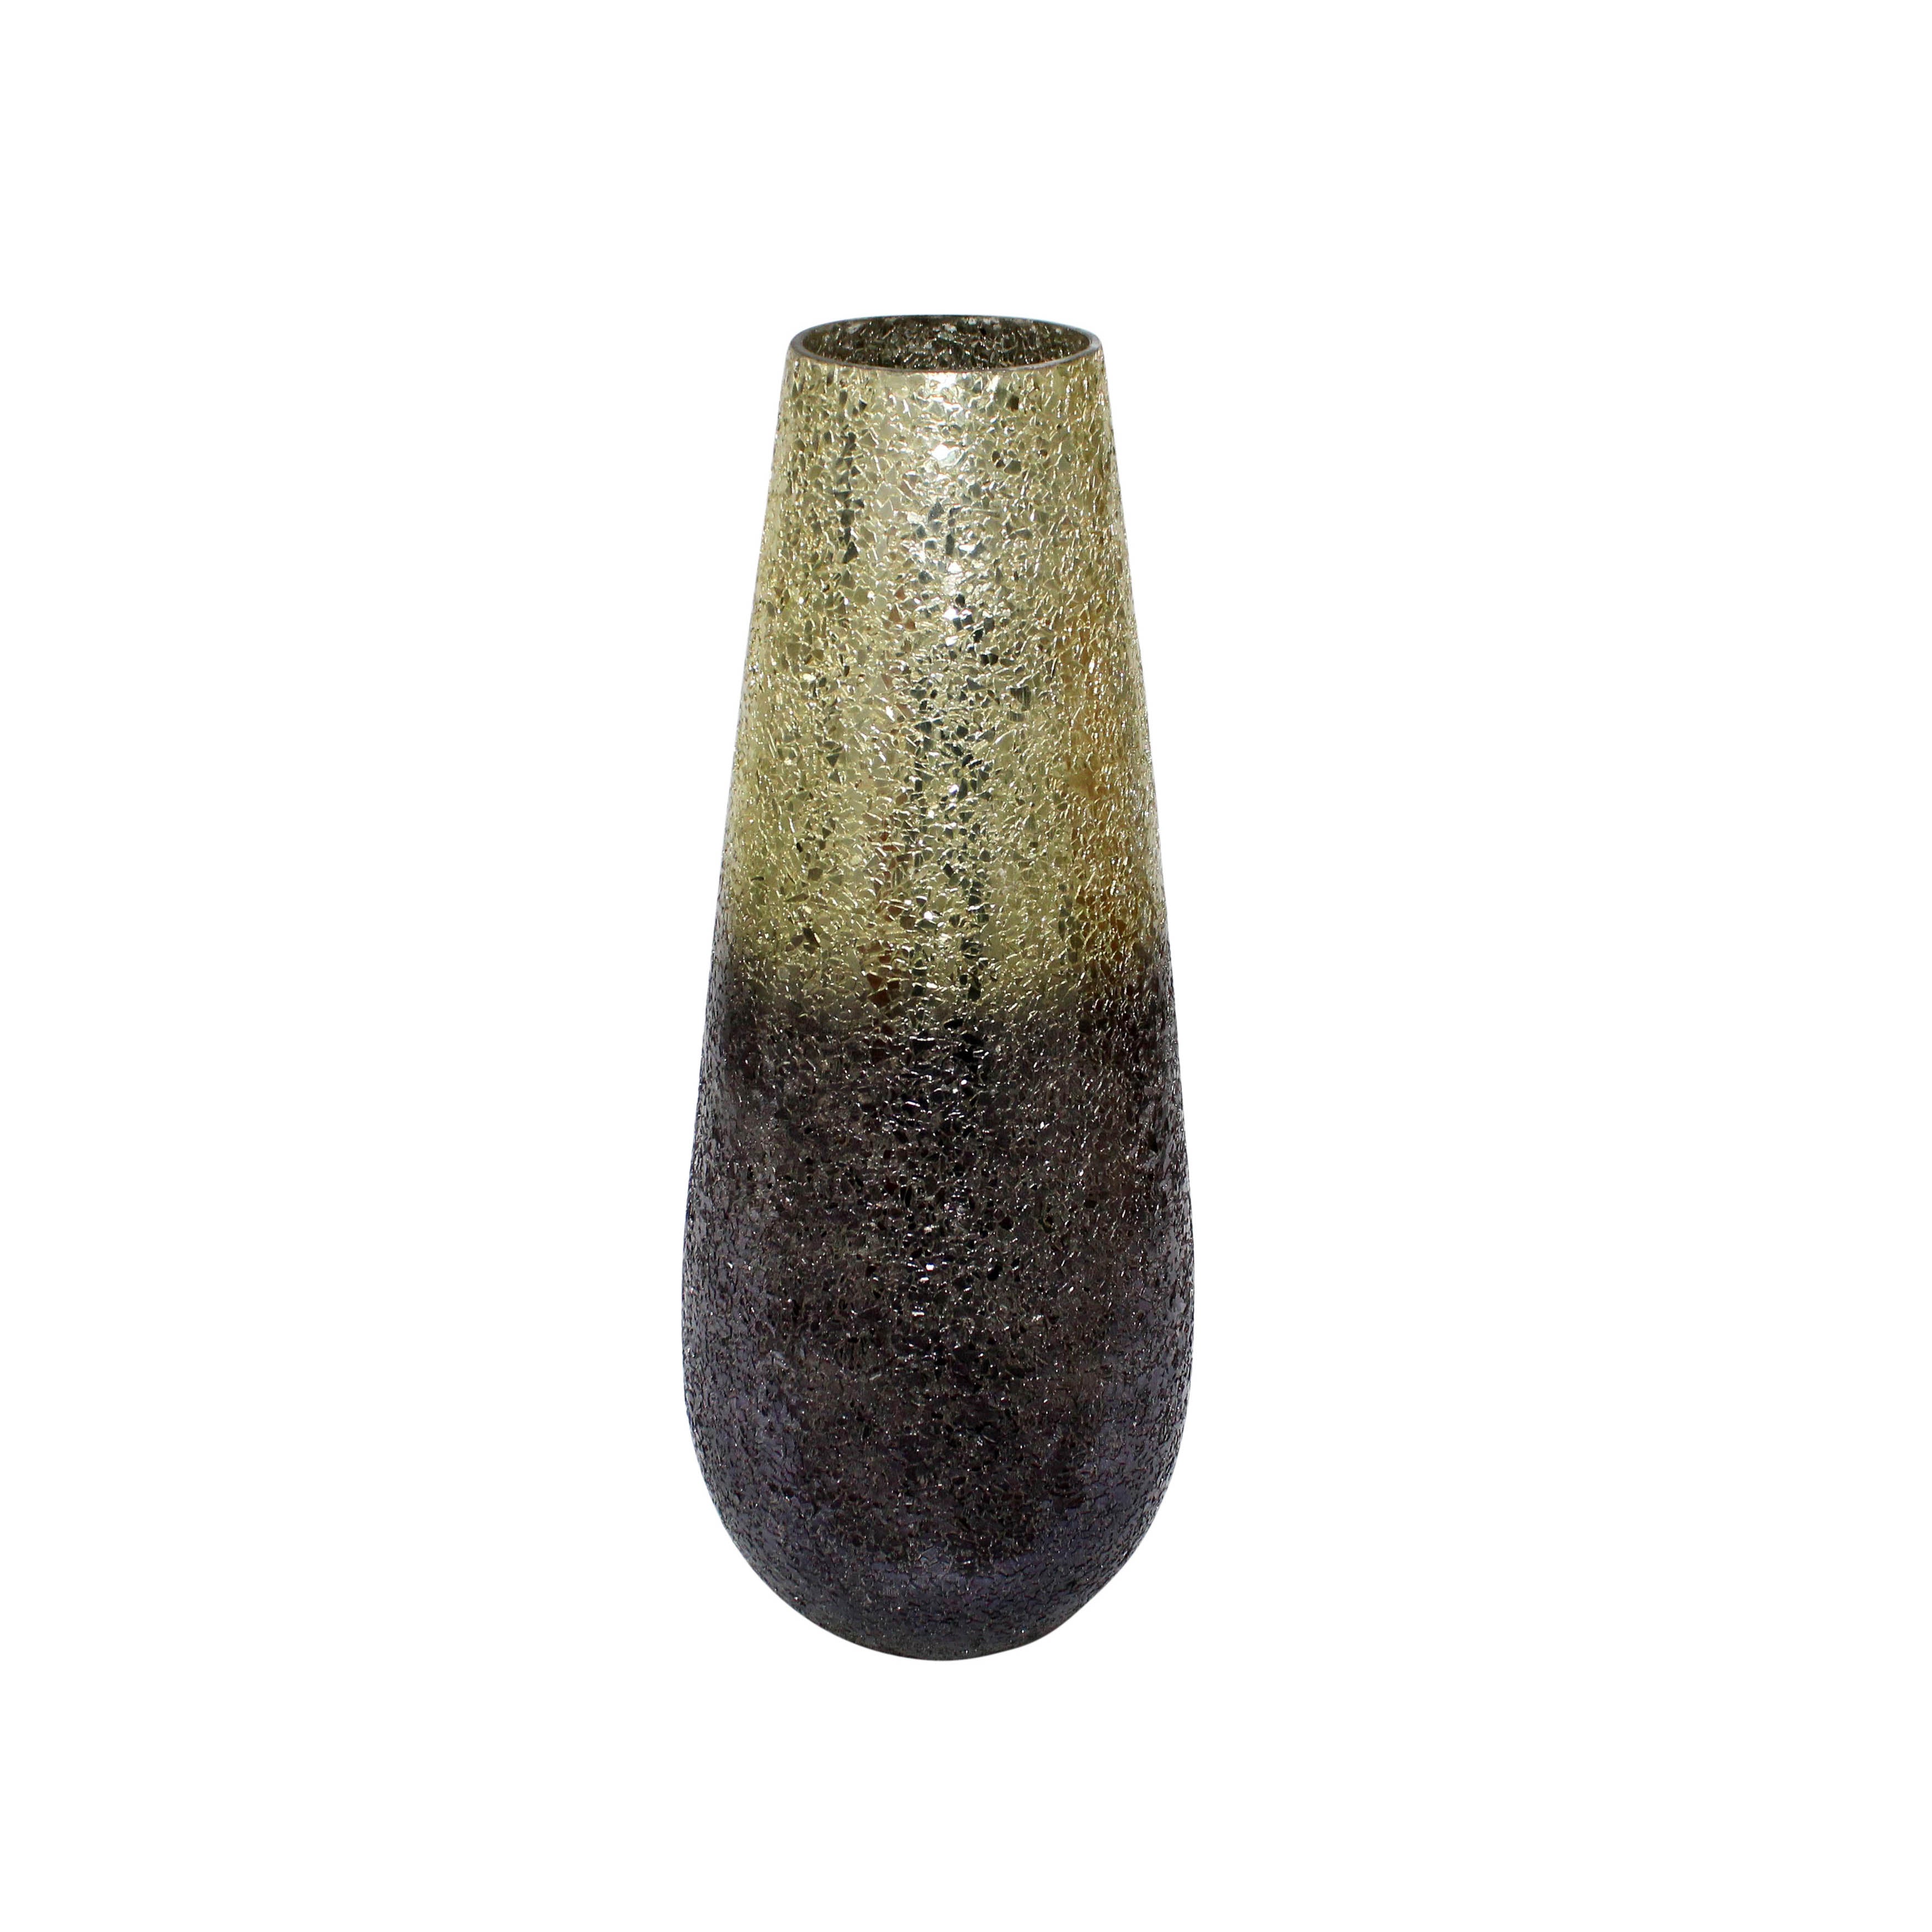 18" Crackled Vase, Gray Ombre, Vases